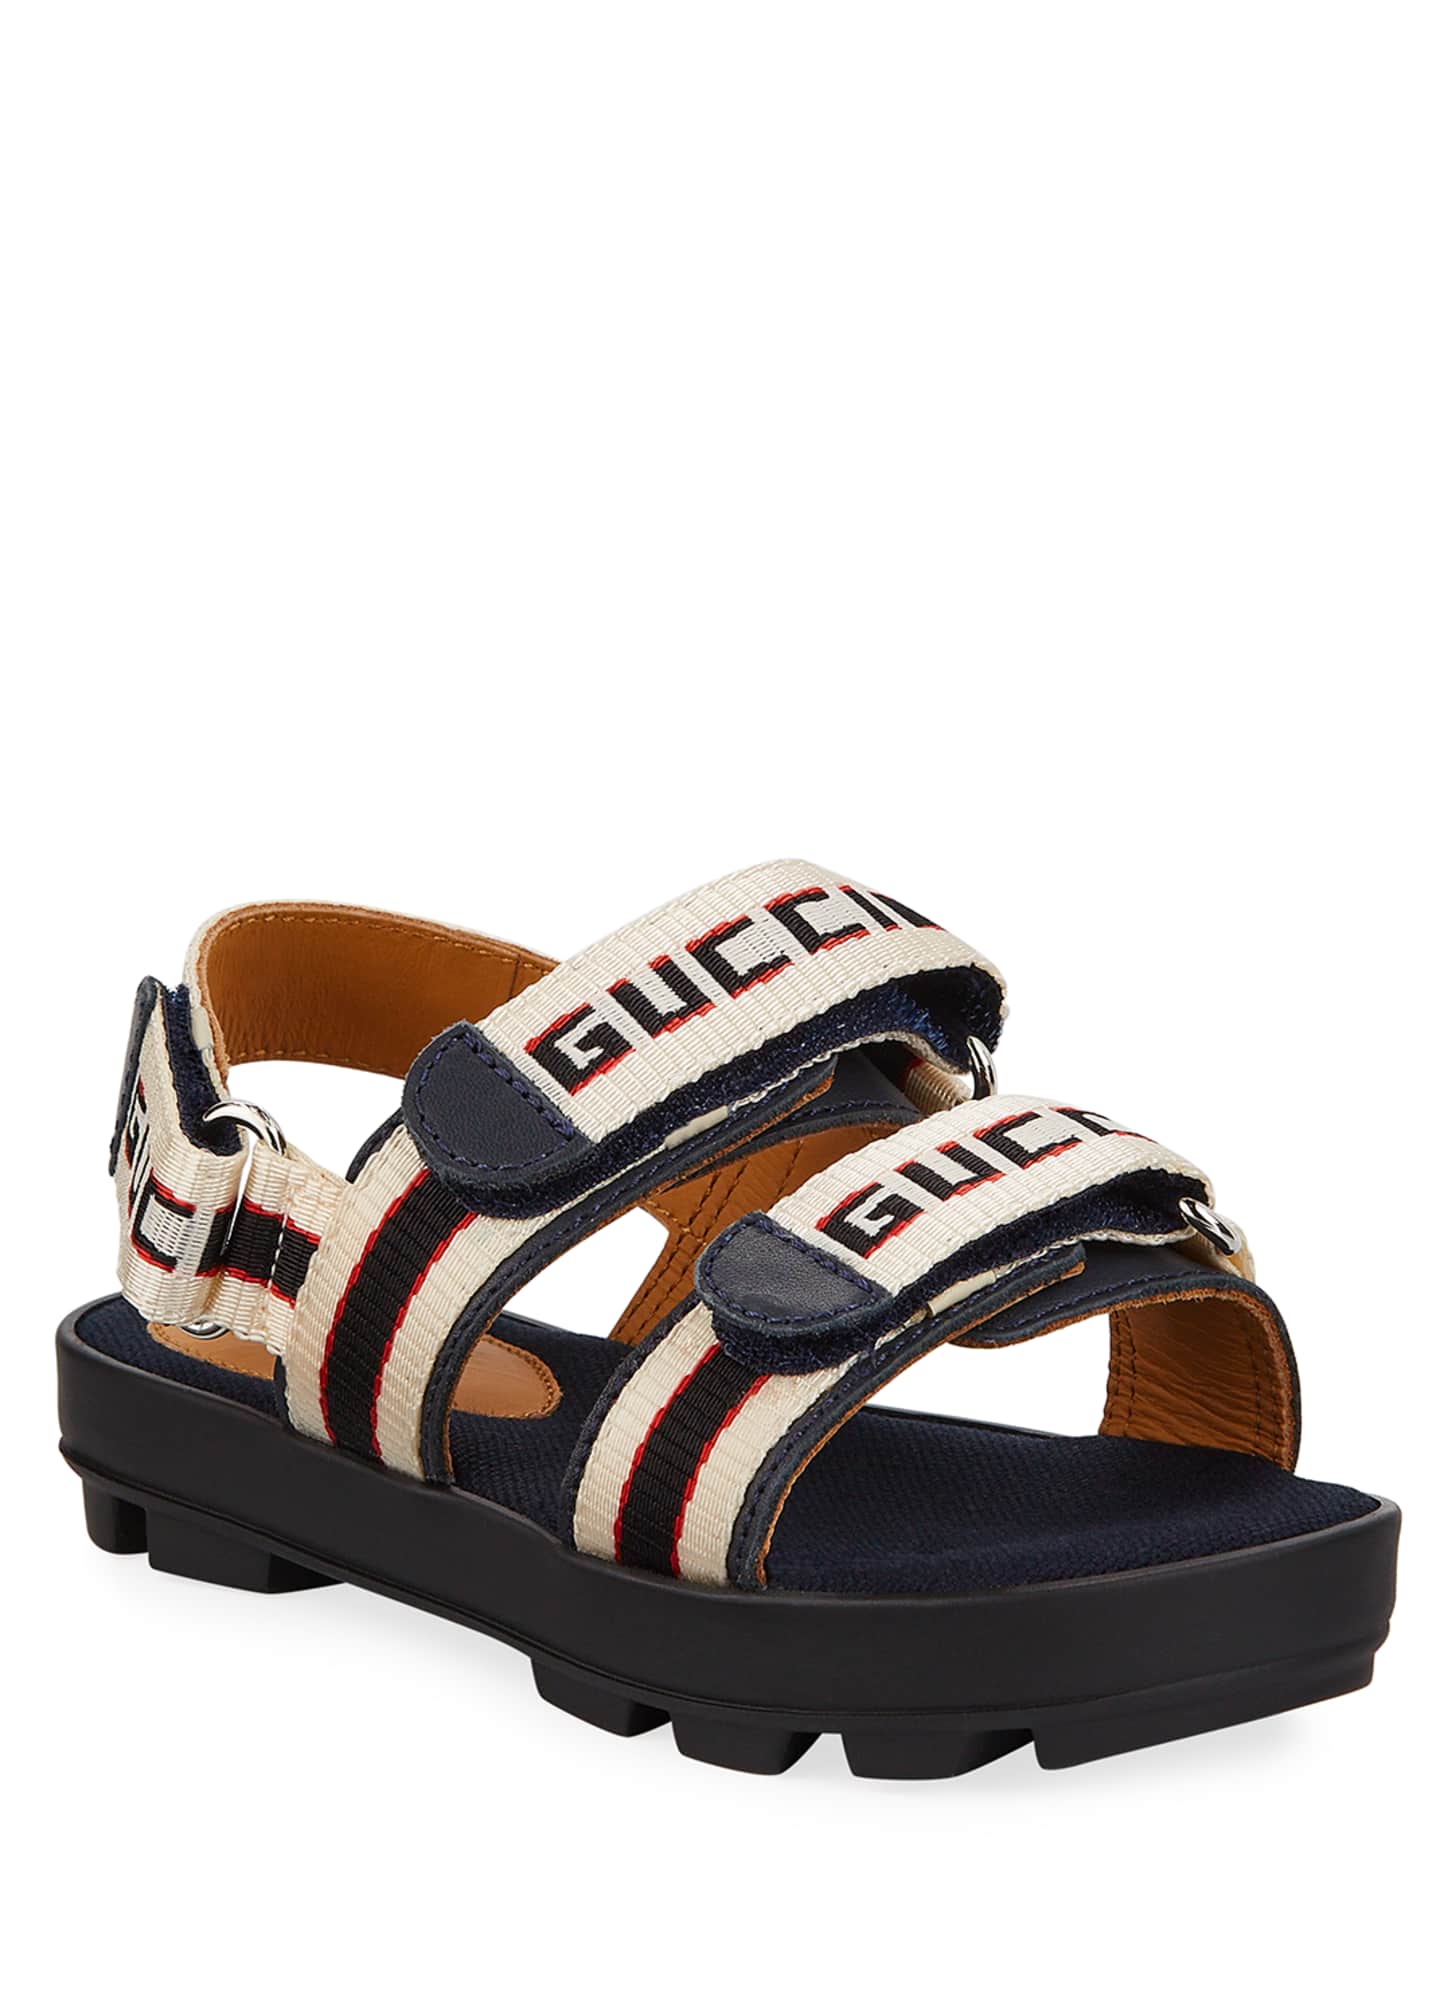 gucci kids sandal